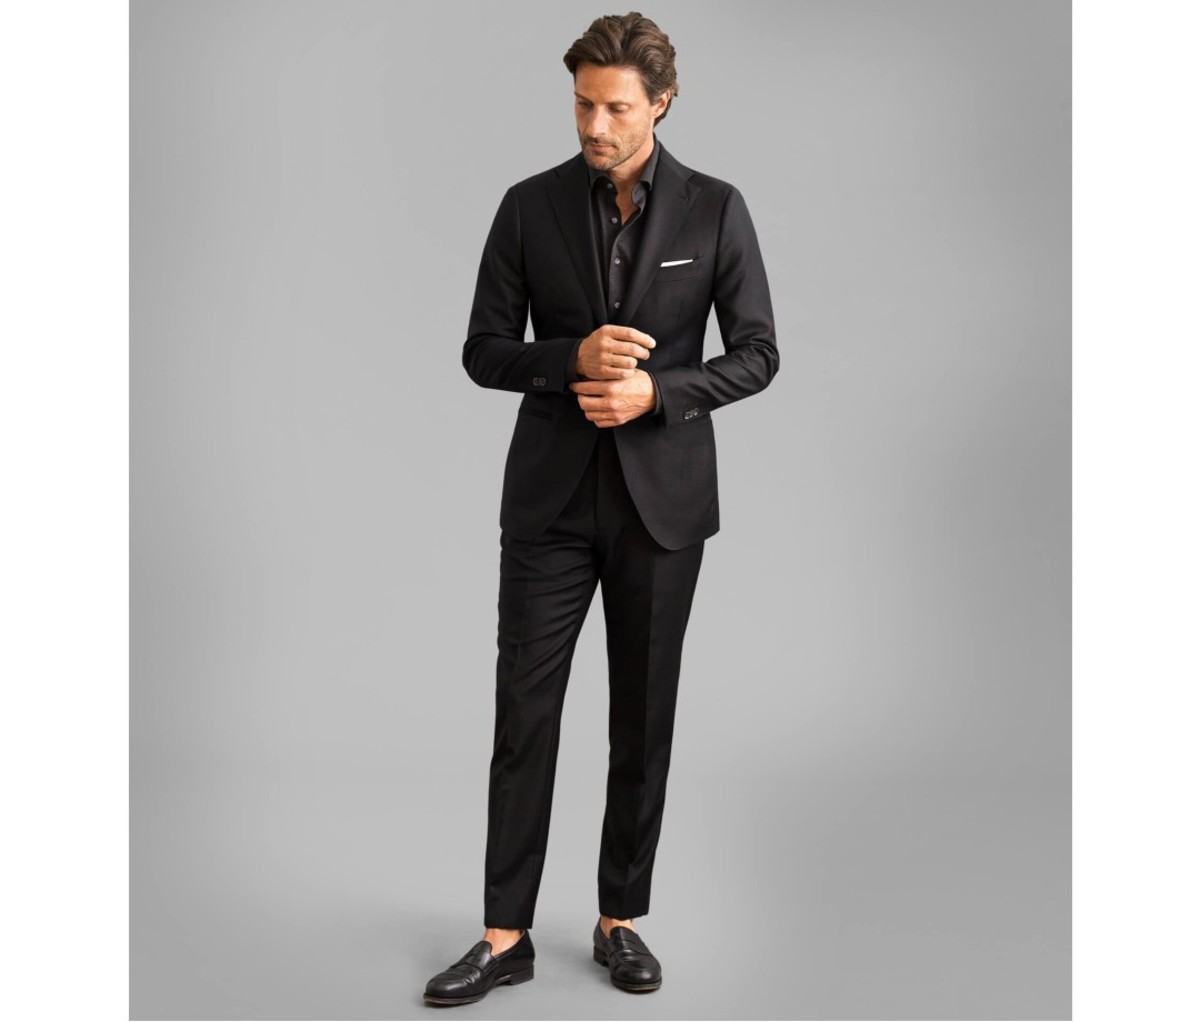 Best Online Suit & Tuxedo Rental for Men